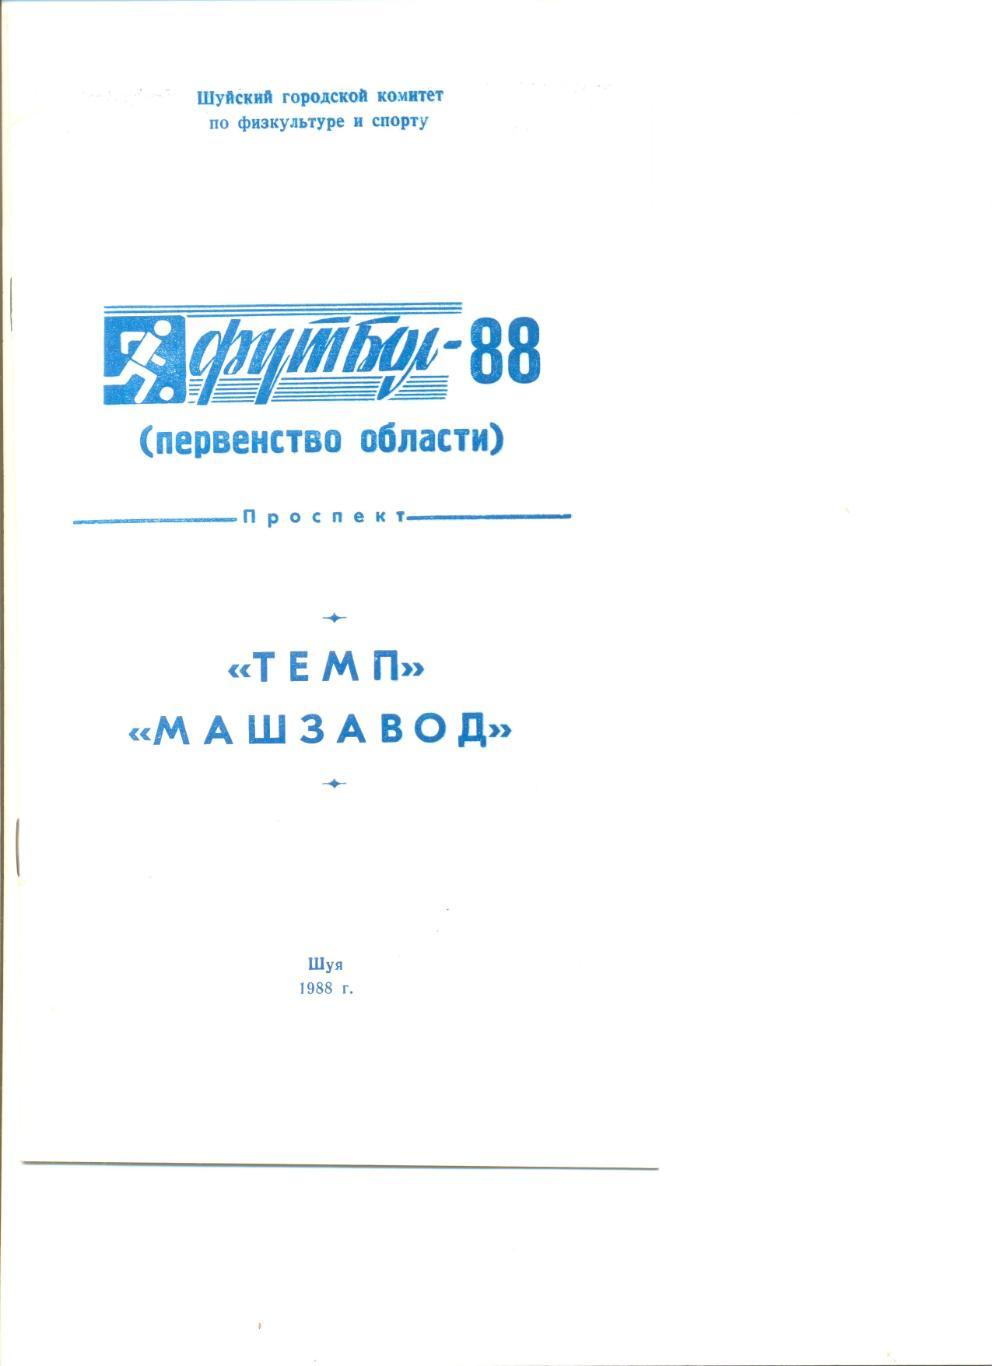 Буклет Шуя-1988 Темп и Машзавод в Первенстве Ивановской области по футболу.